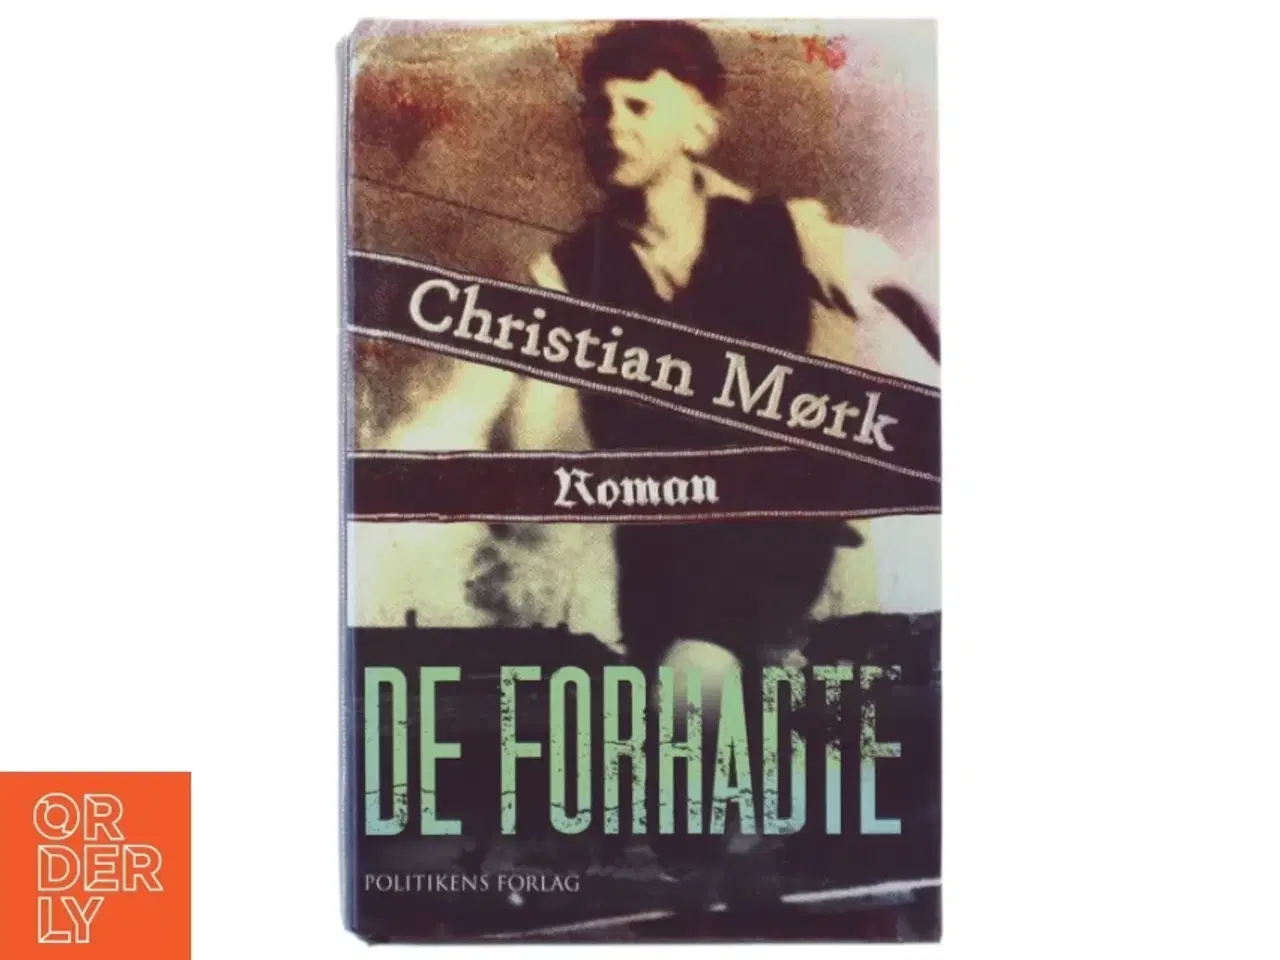 Billede 1 - De forhadte : roman af Christian Mørk (Bog) fra Politikens Forlag